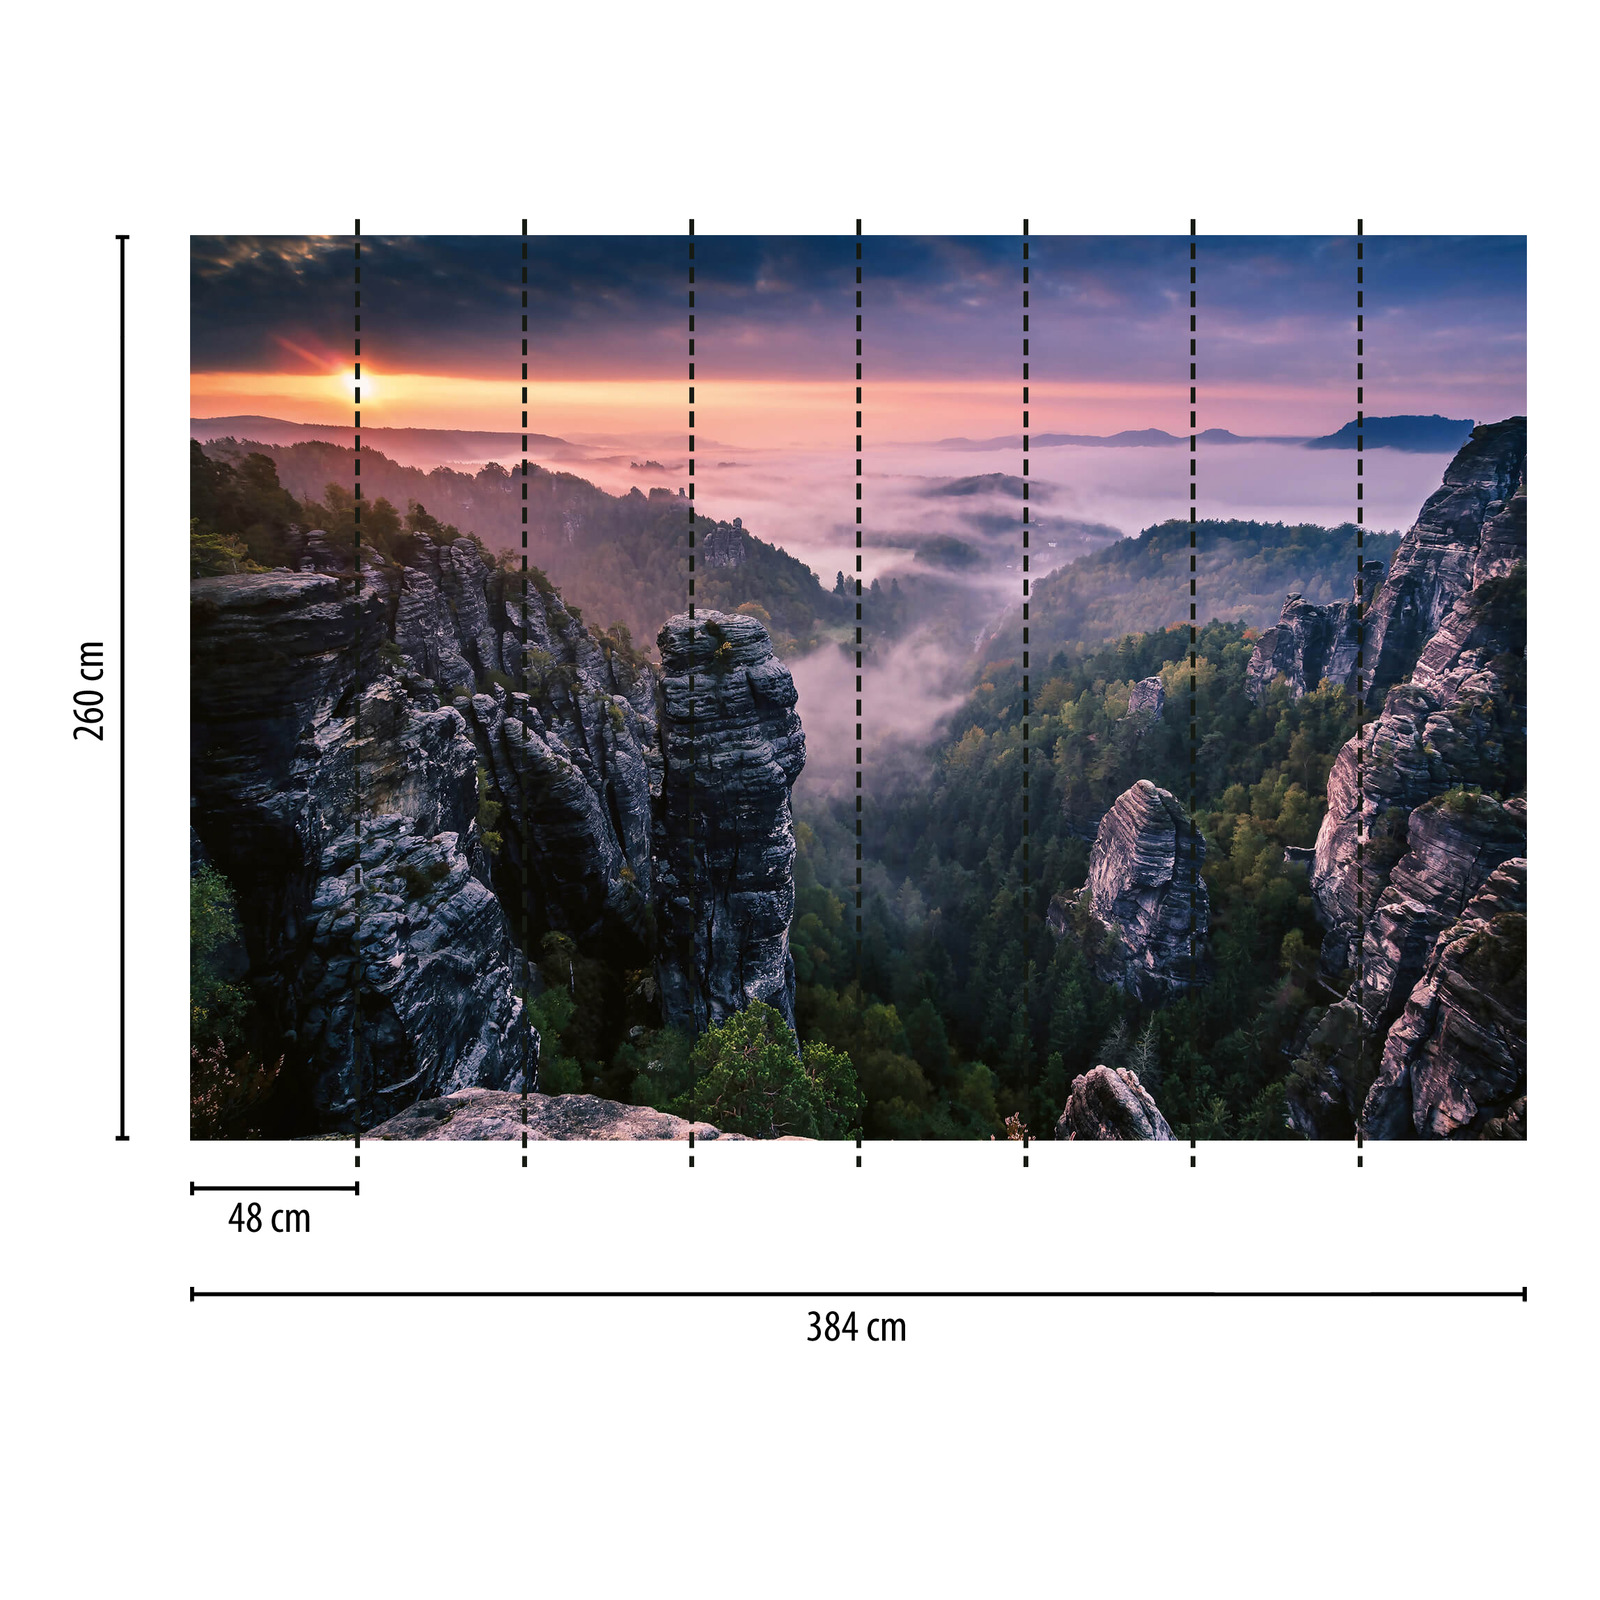             Fototapete Sonnenaufgang in Bergen – Grau, Grün, Weiß
        